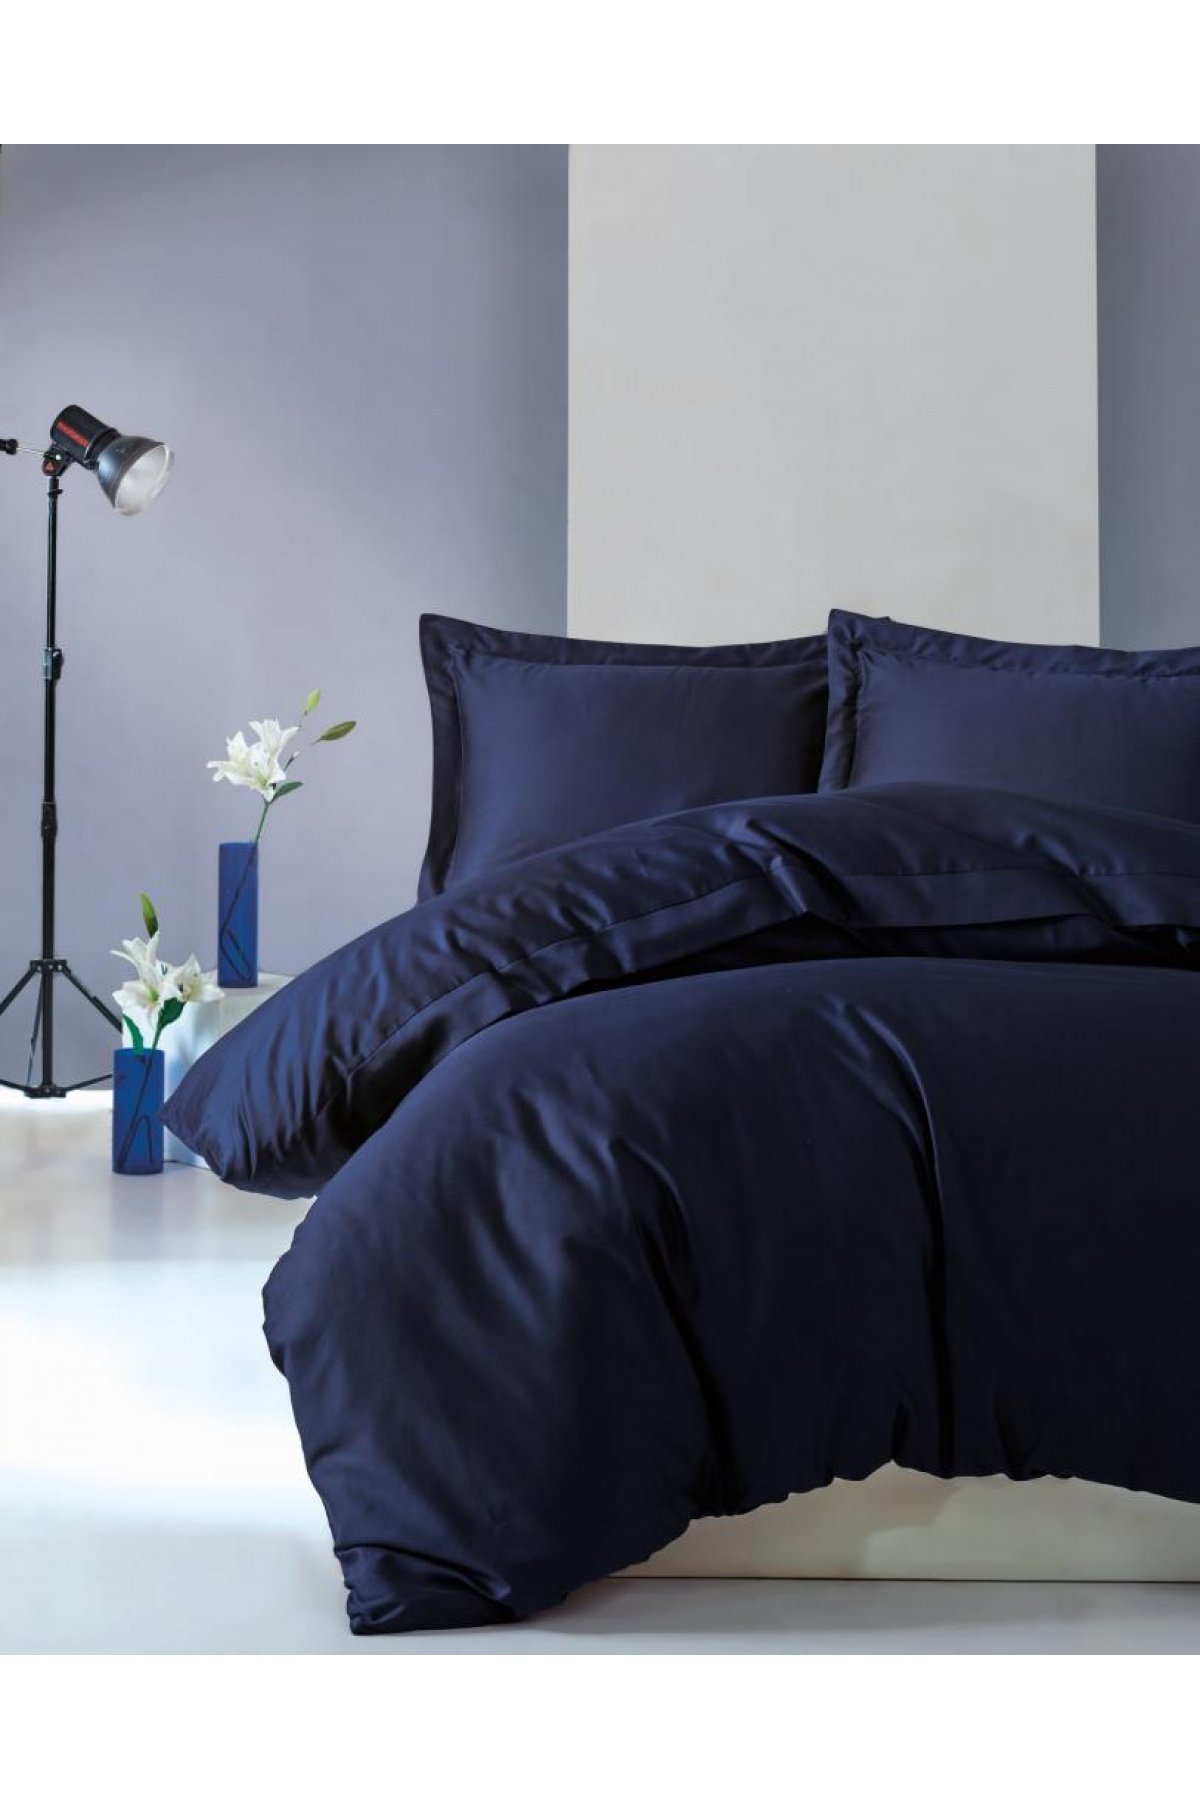 Bedding-Dark Blue